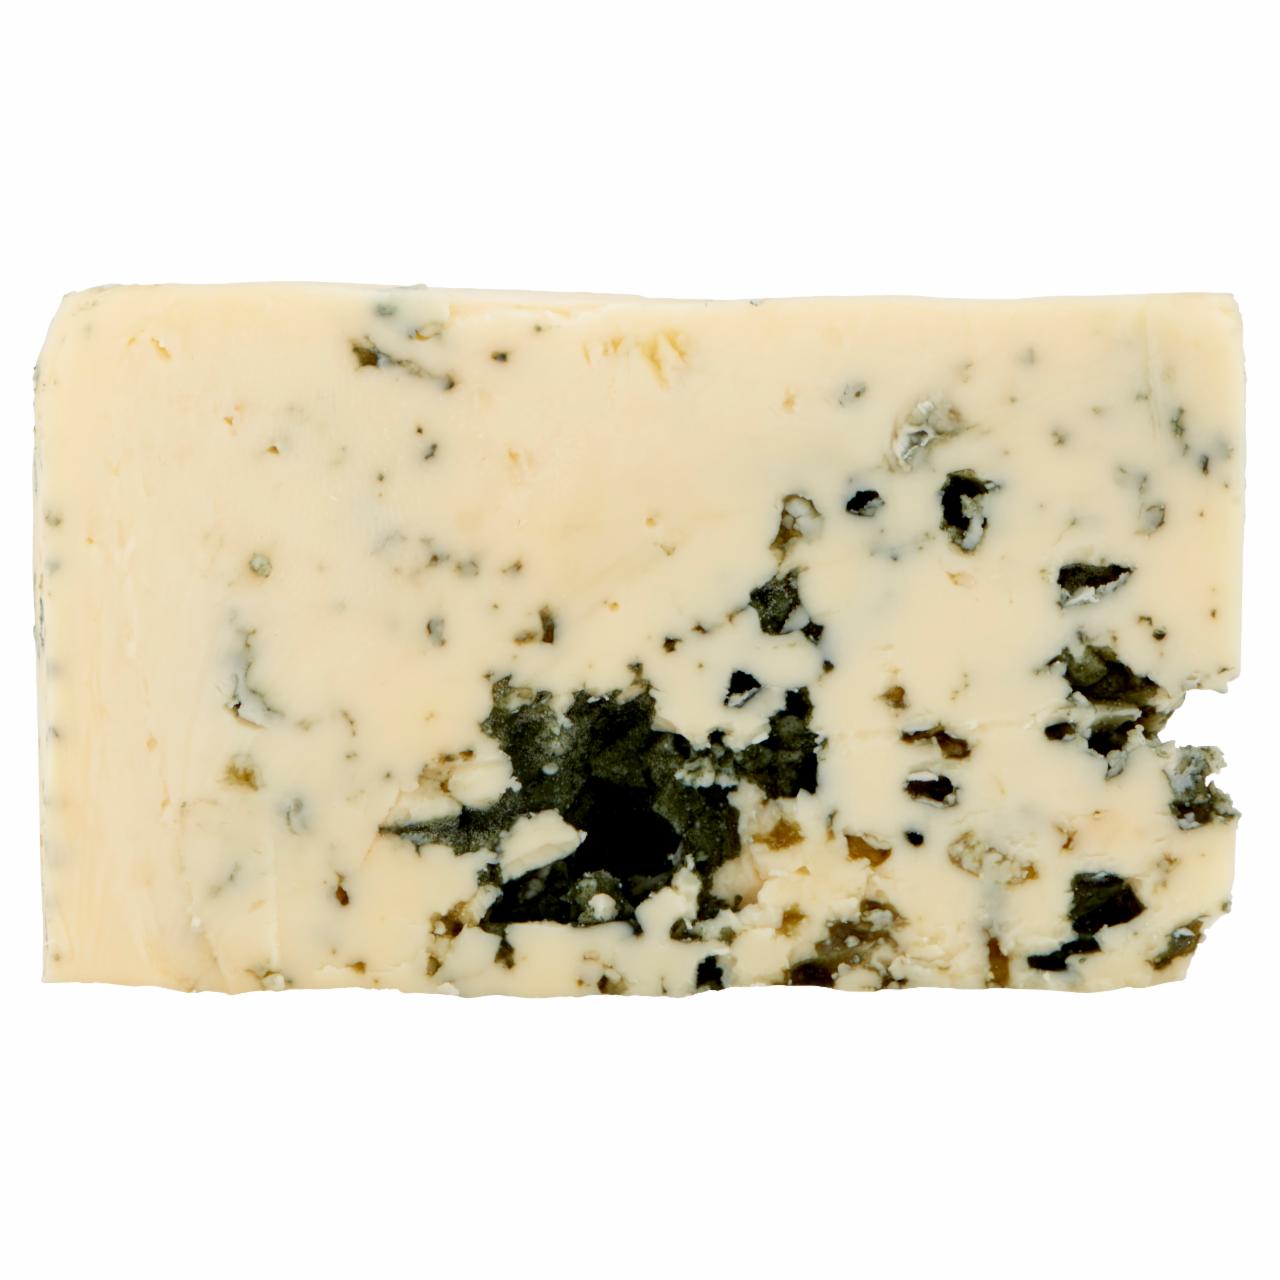 Képek - Castello Márványsajt kék nemespenésszel érős, zsíros, félkemény sajt